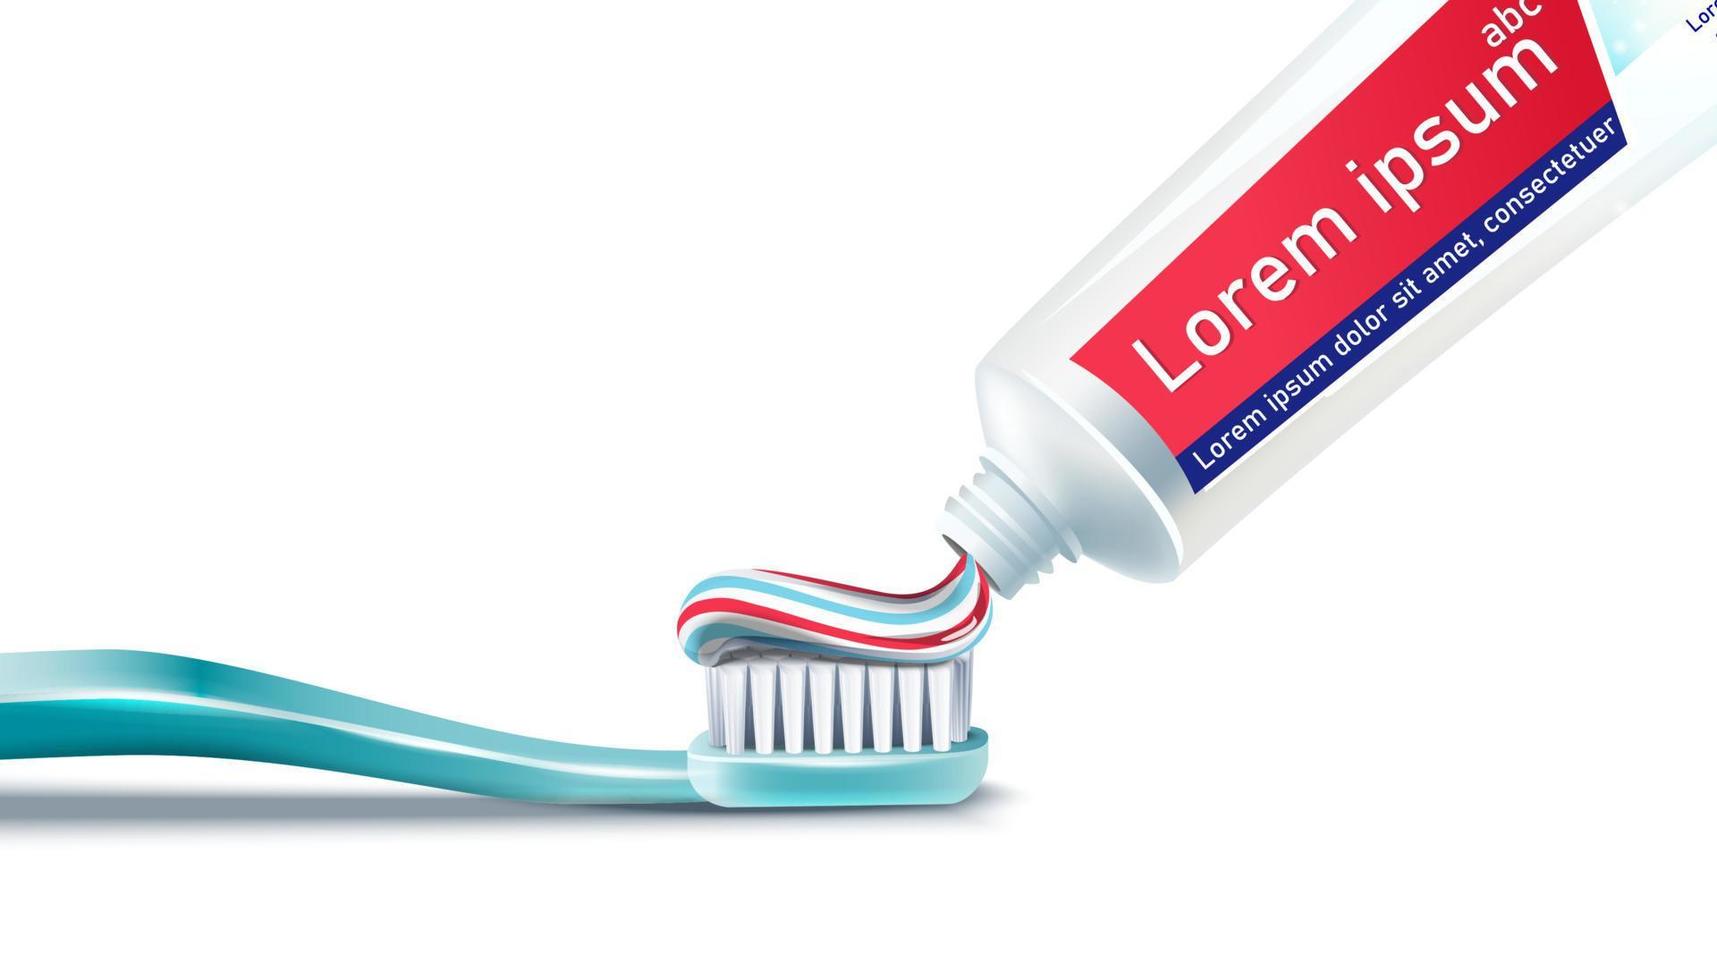 Cepillo de dientes vectorial realista 3d con pasta de dientes. aislado sobre fondo blanco. para su web, publicidad e impresiones. vector